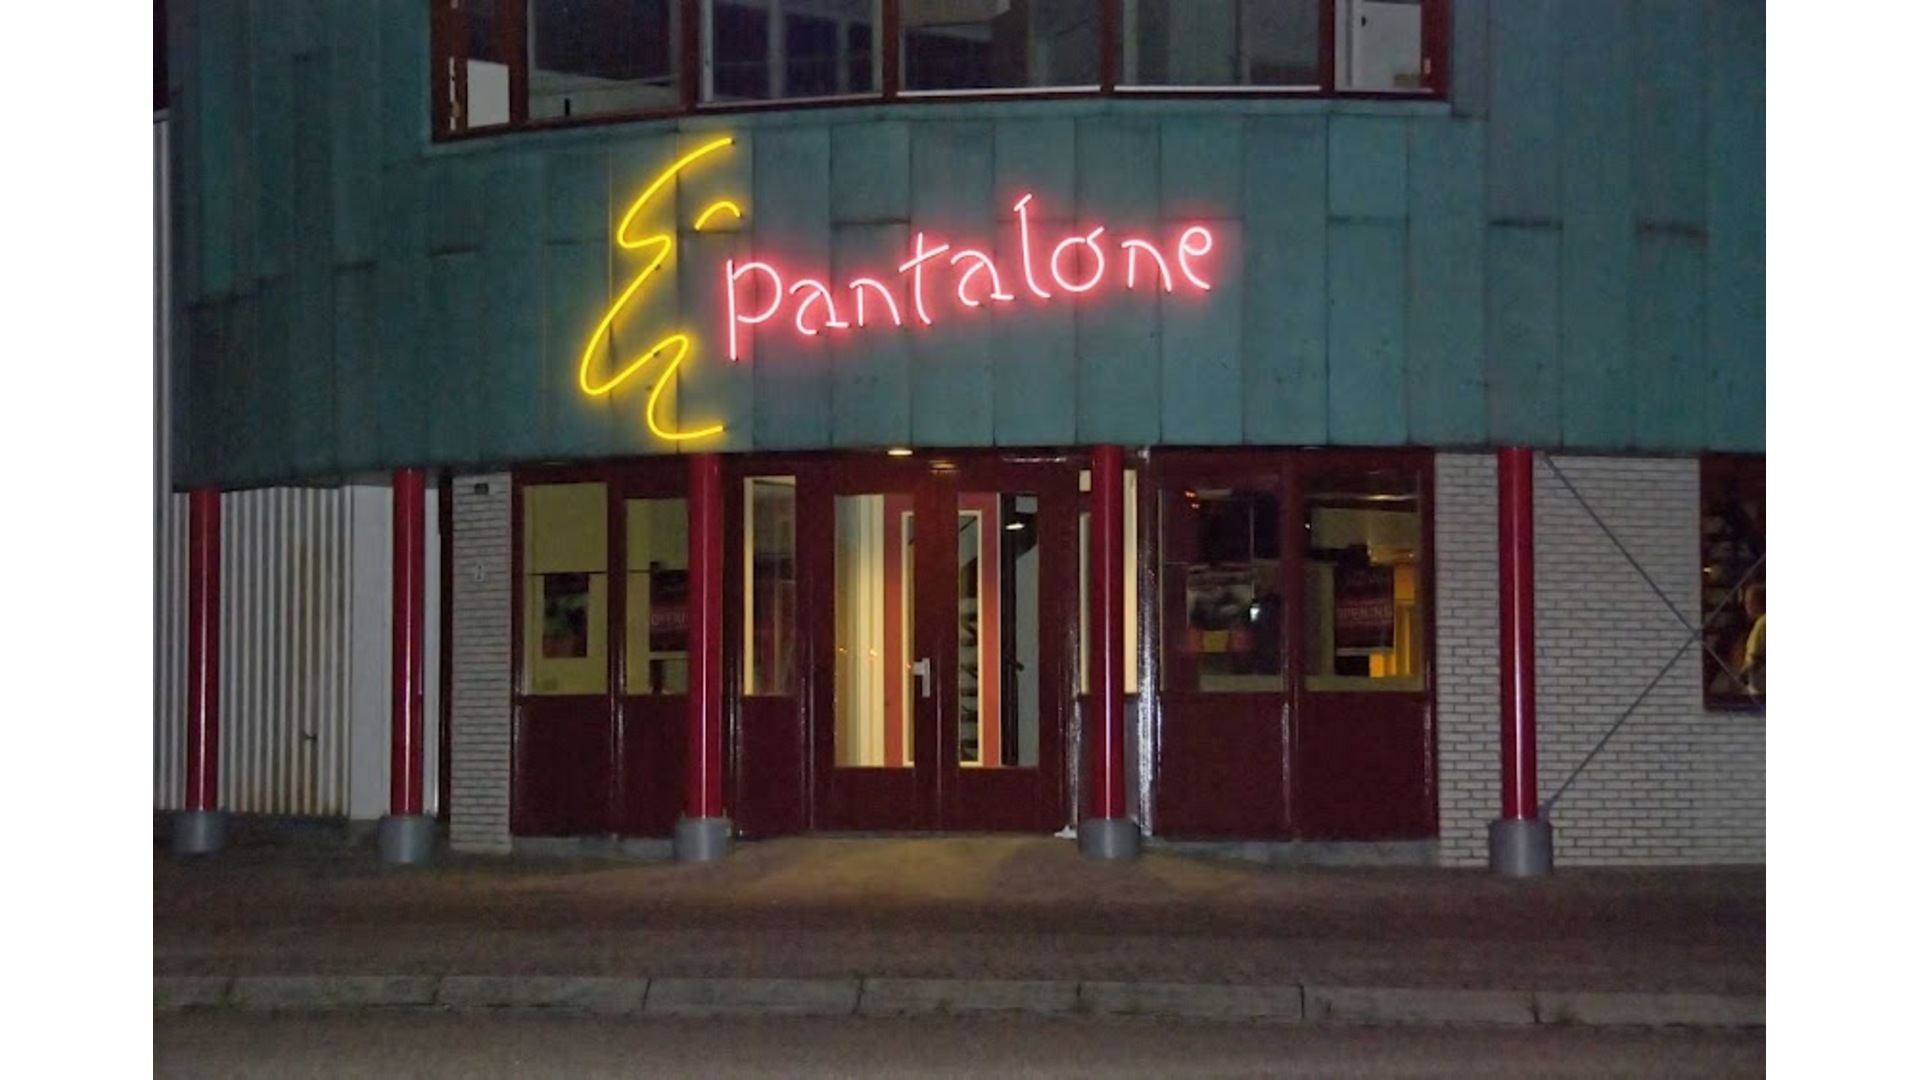 Theater Pantalone